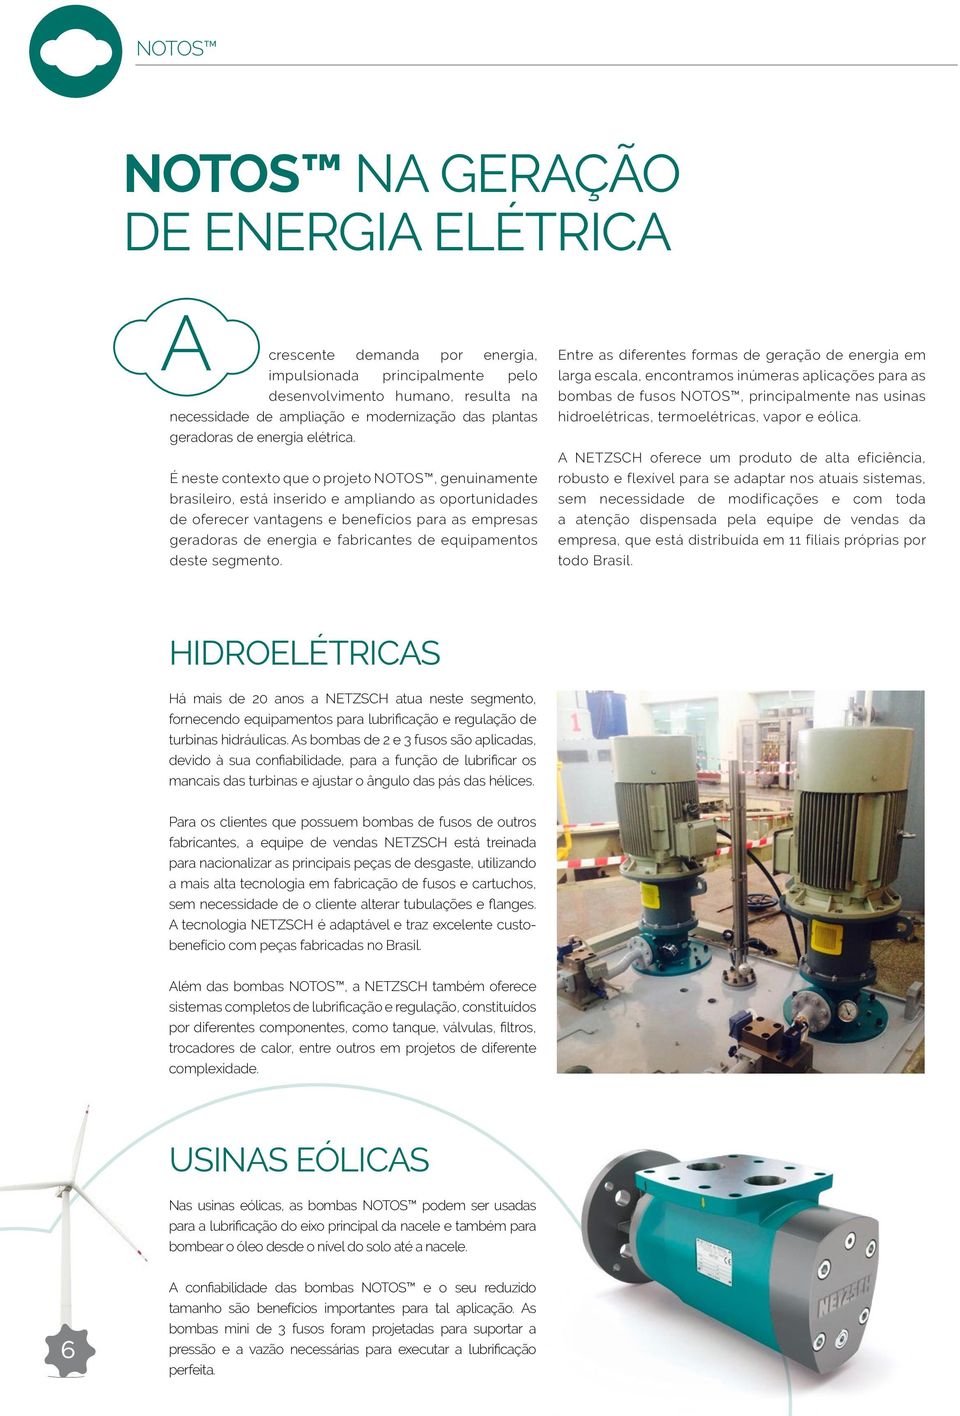 É neste contexto que o projeto NOTOS, genuinamente brasileiro, está inserido e ampliando as oportunidades de oferecer vantagens e benefícios para as empresas geradoras de energia e fabricantes de